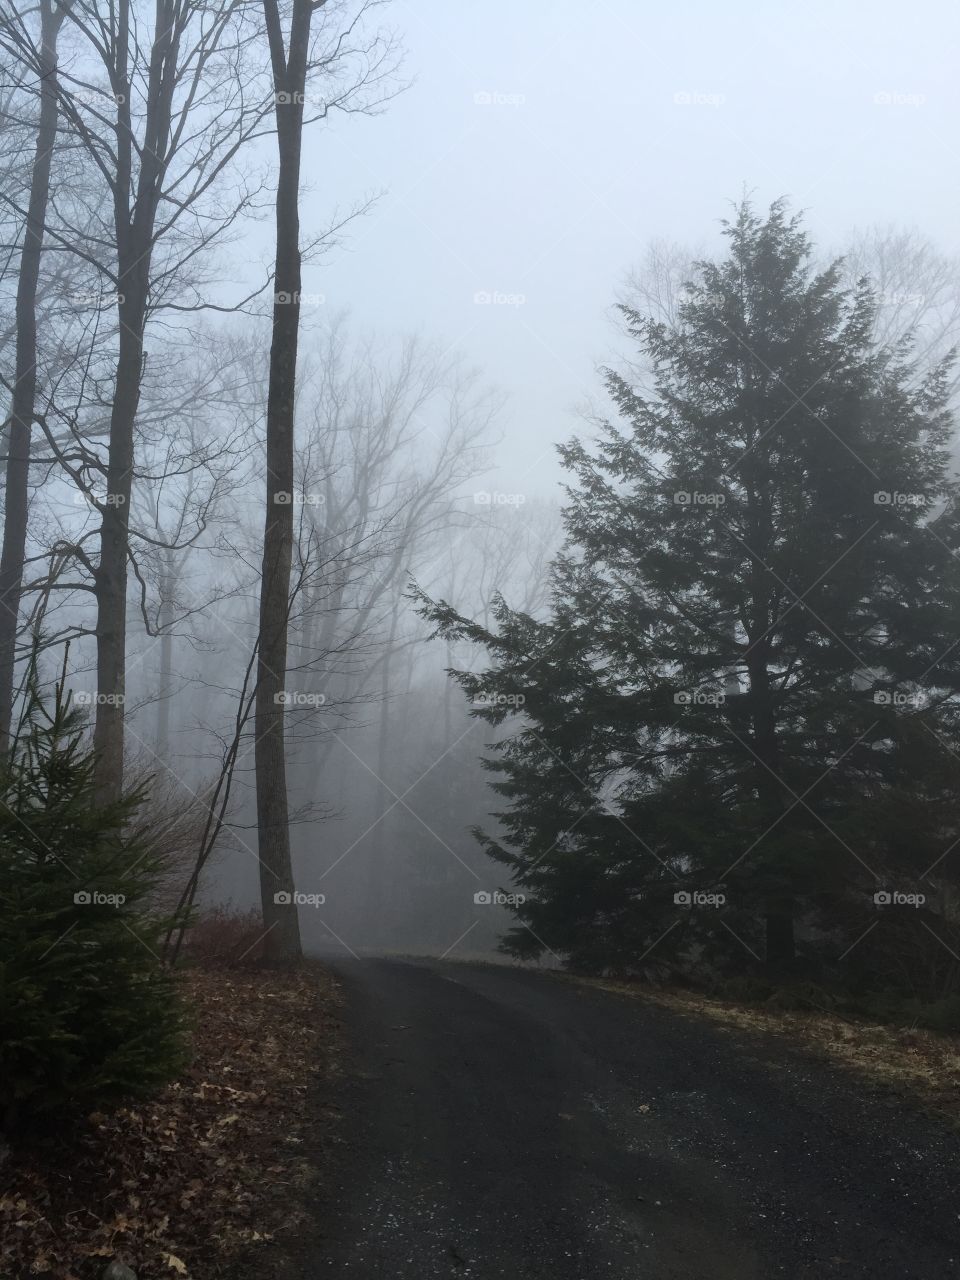 Fog ahead